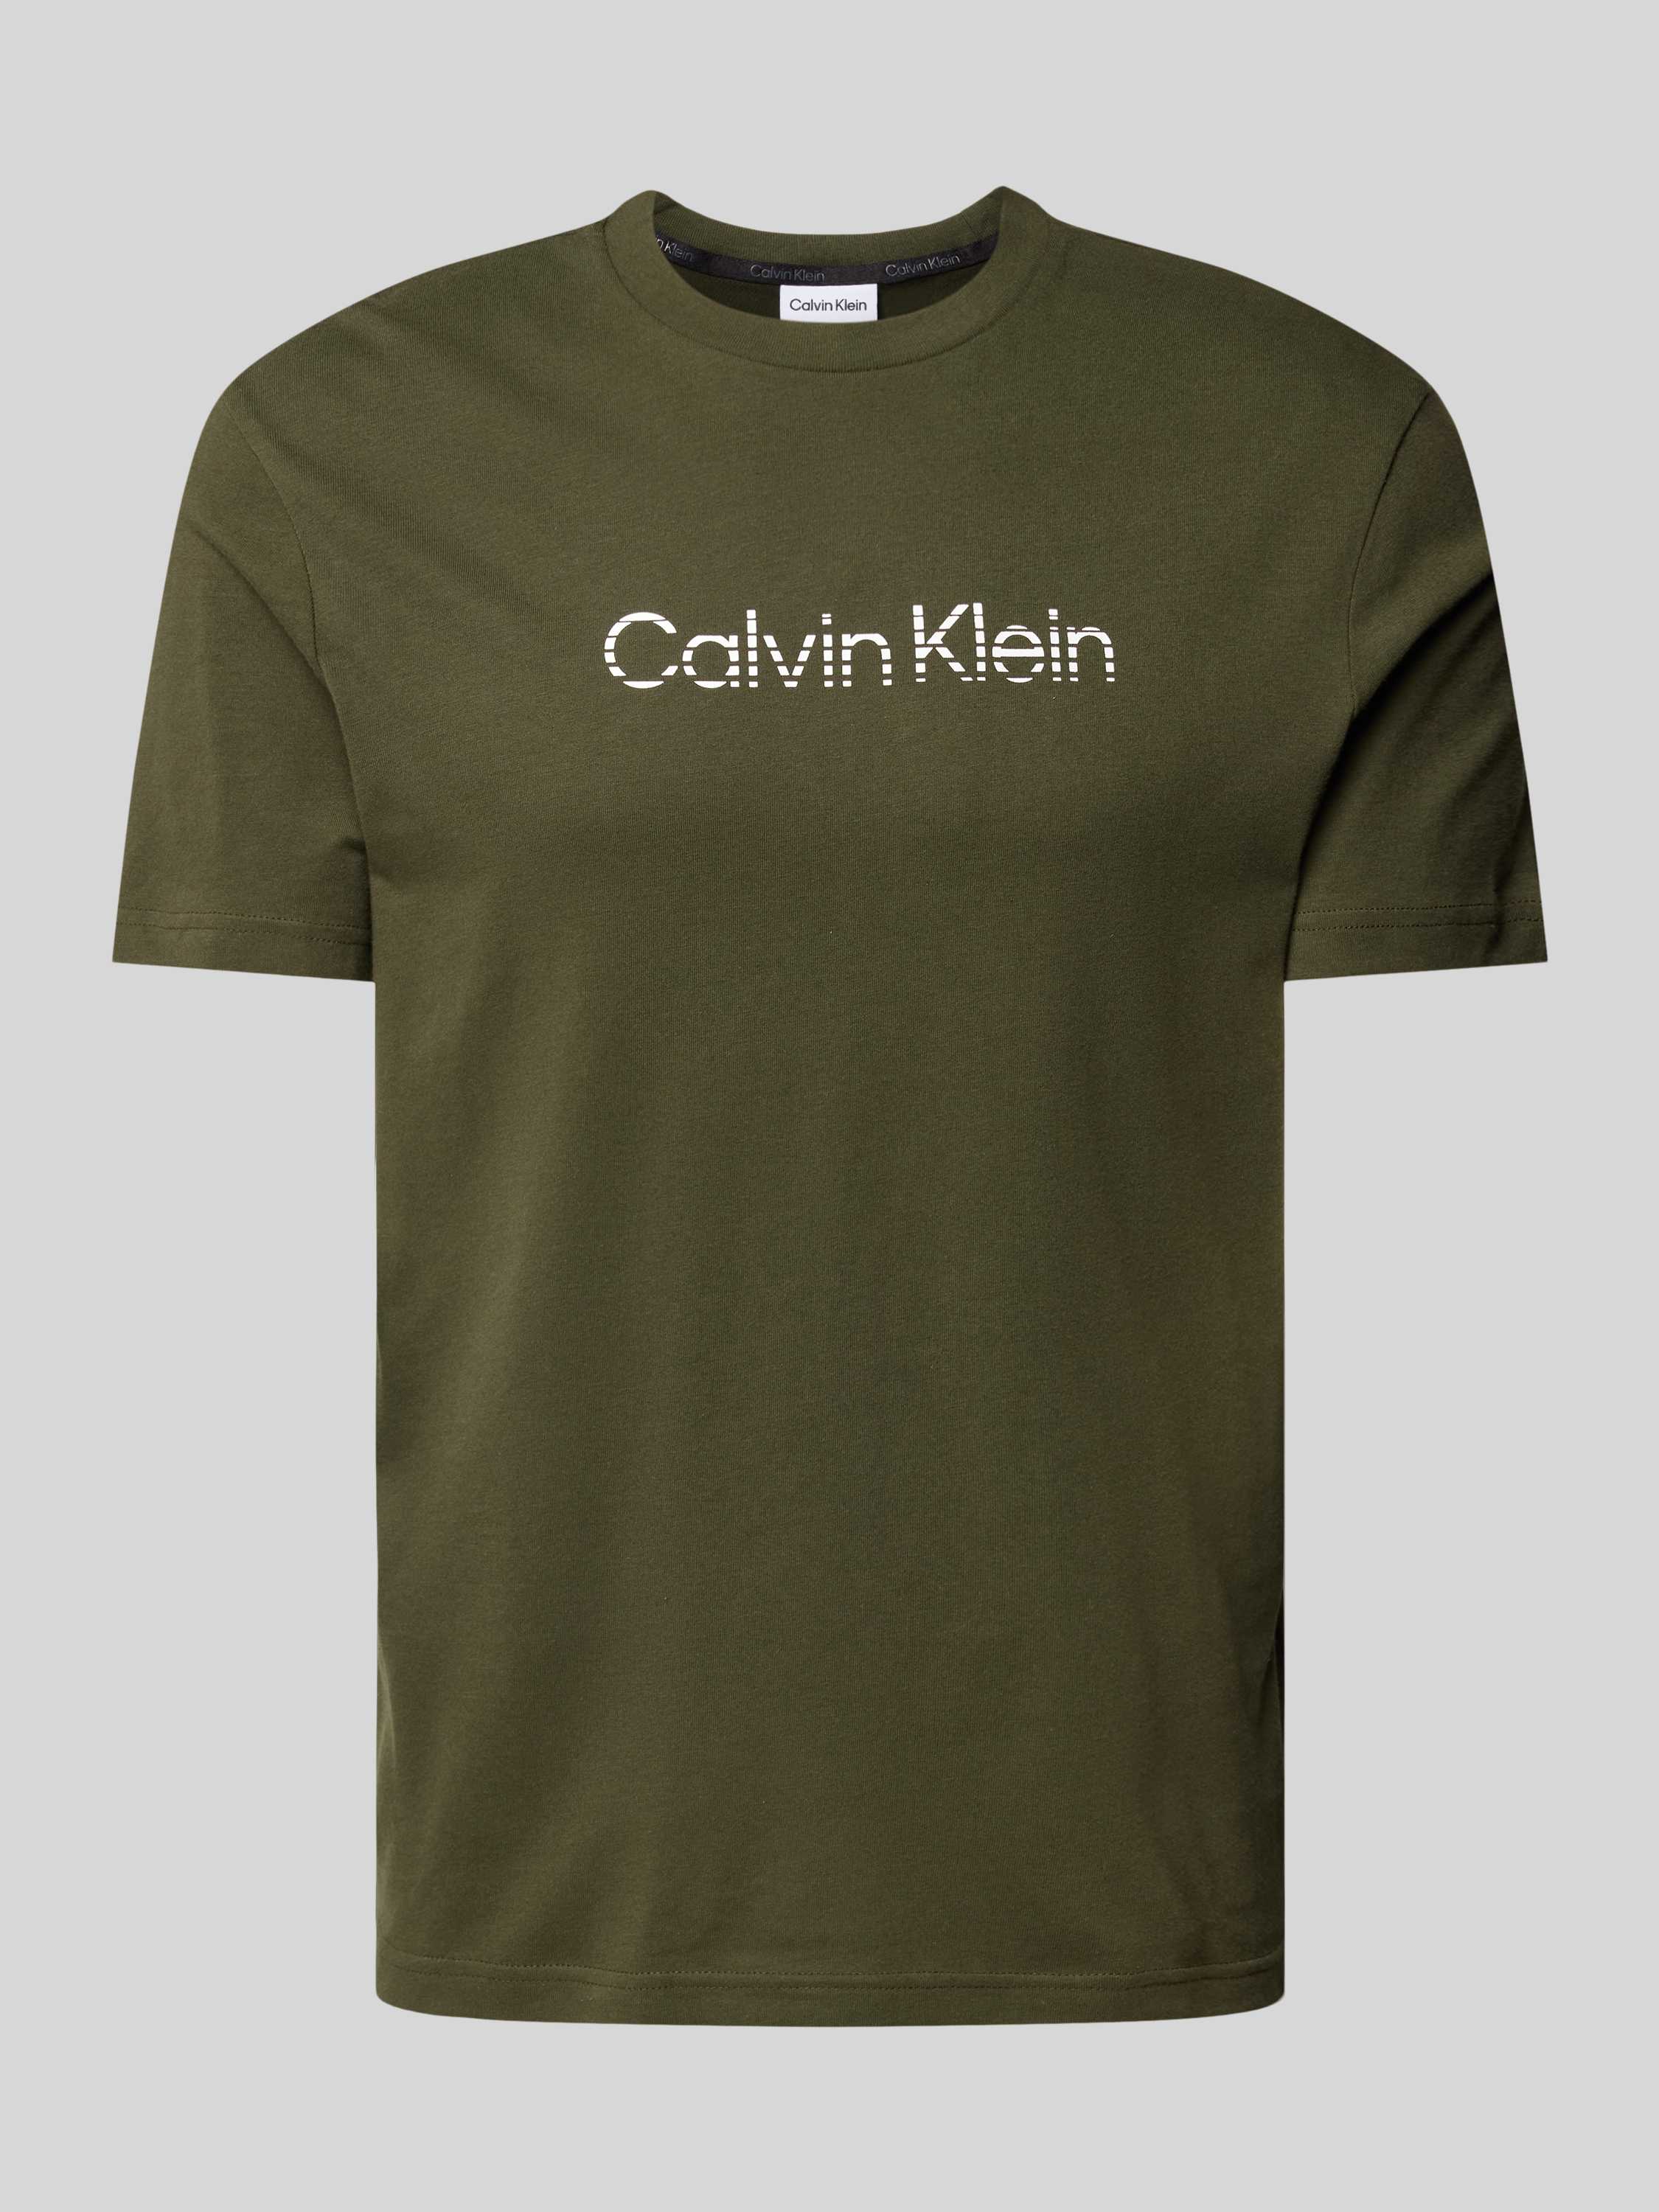 CK Calvin Klein T-shirt met labelprint